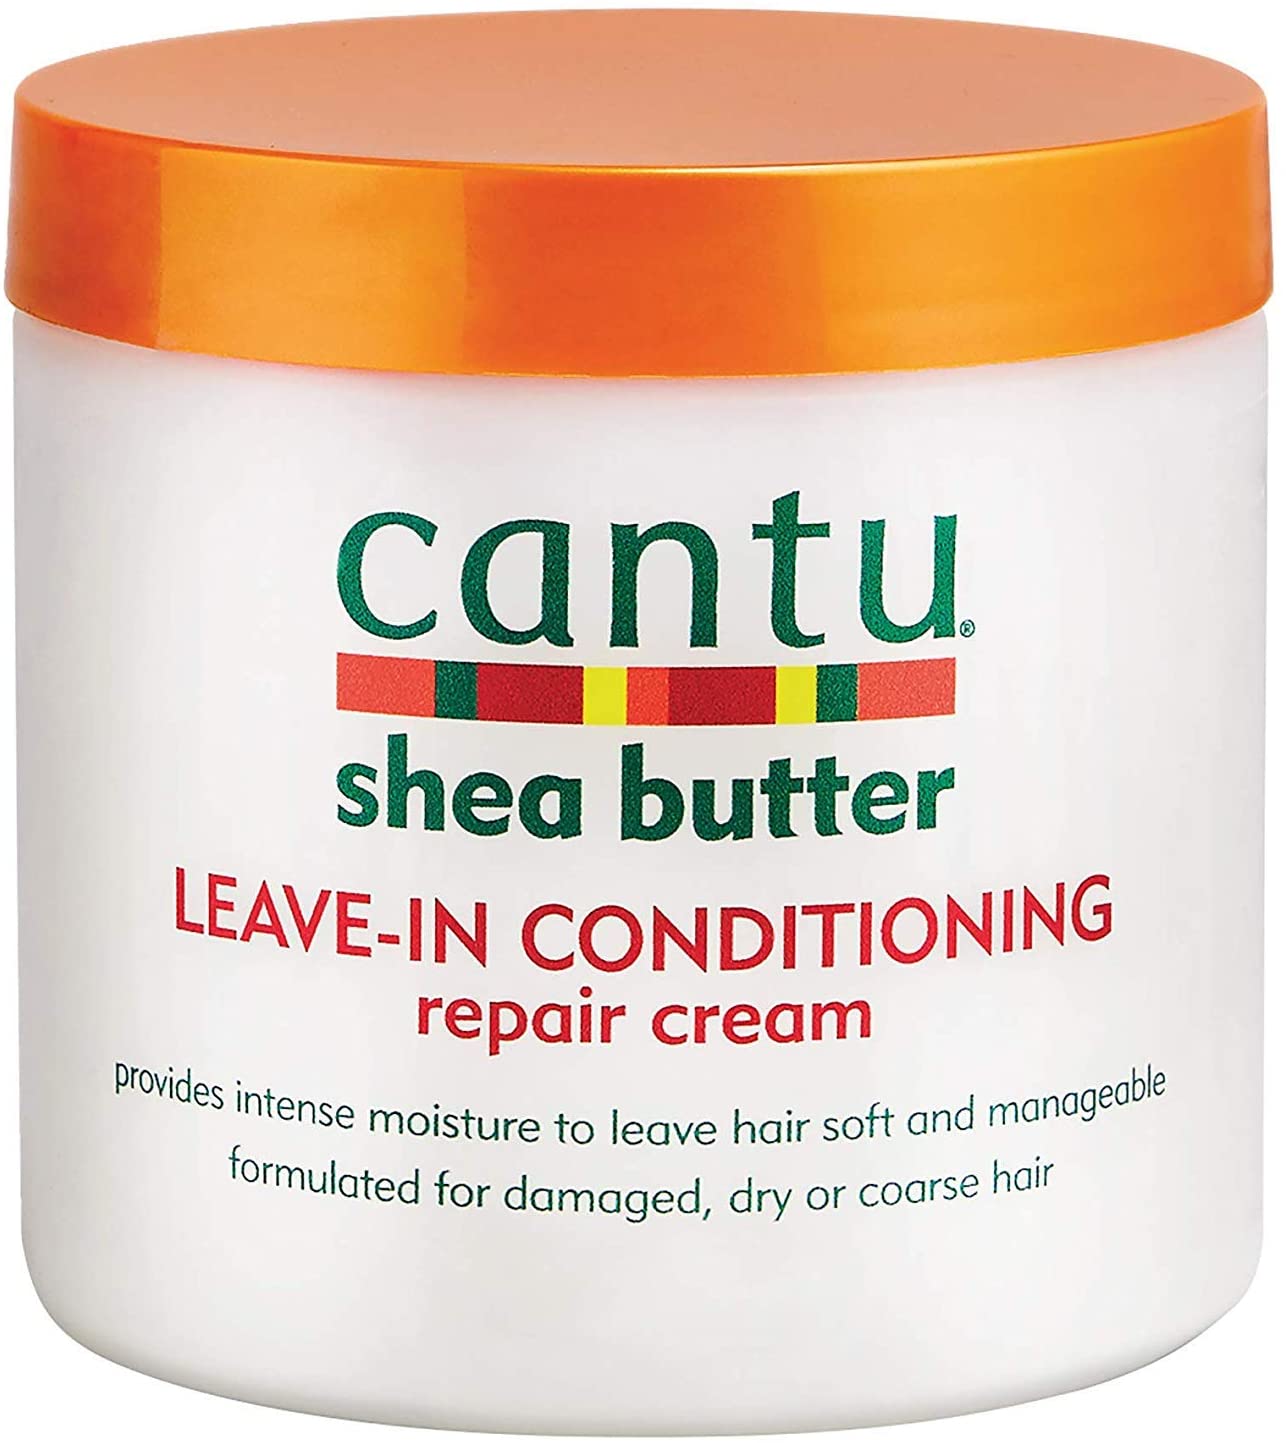 Cantu Leave-In Conditioning Repair Cream